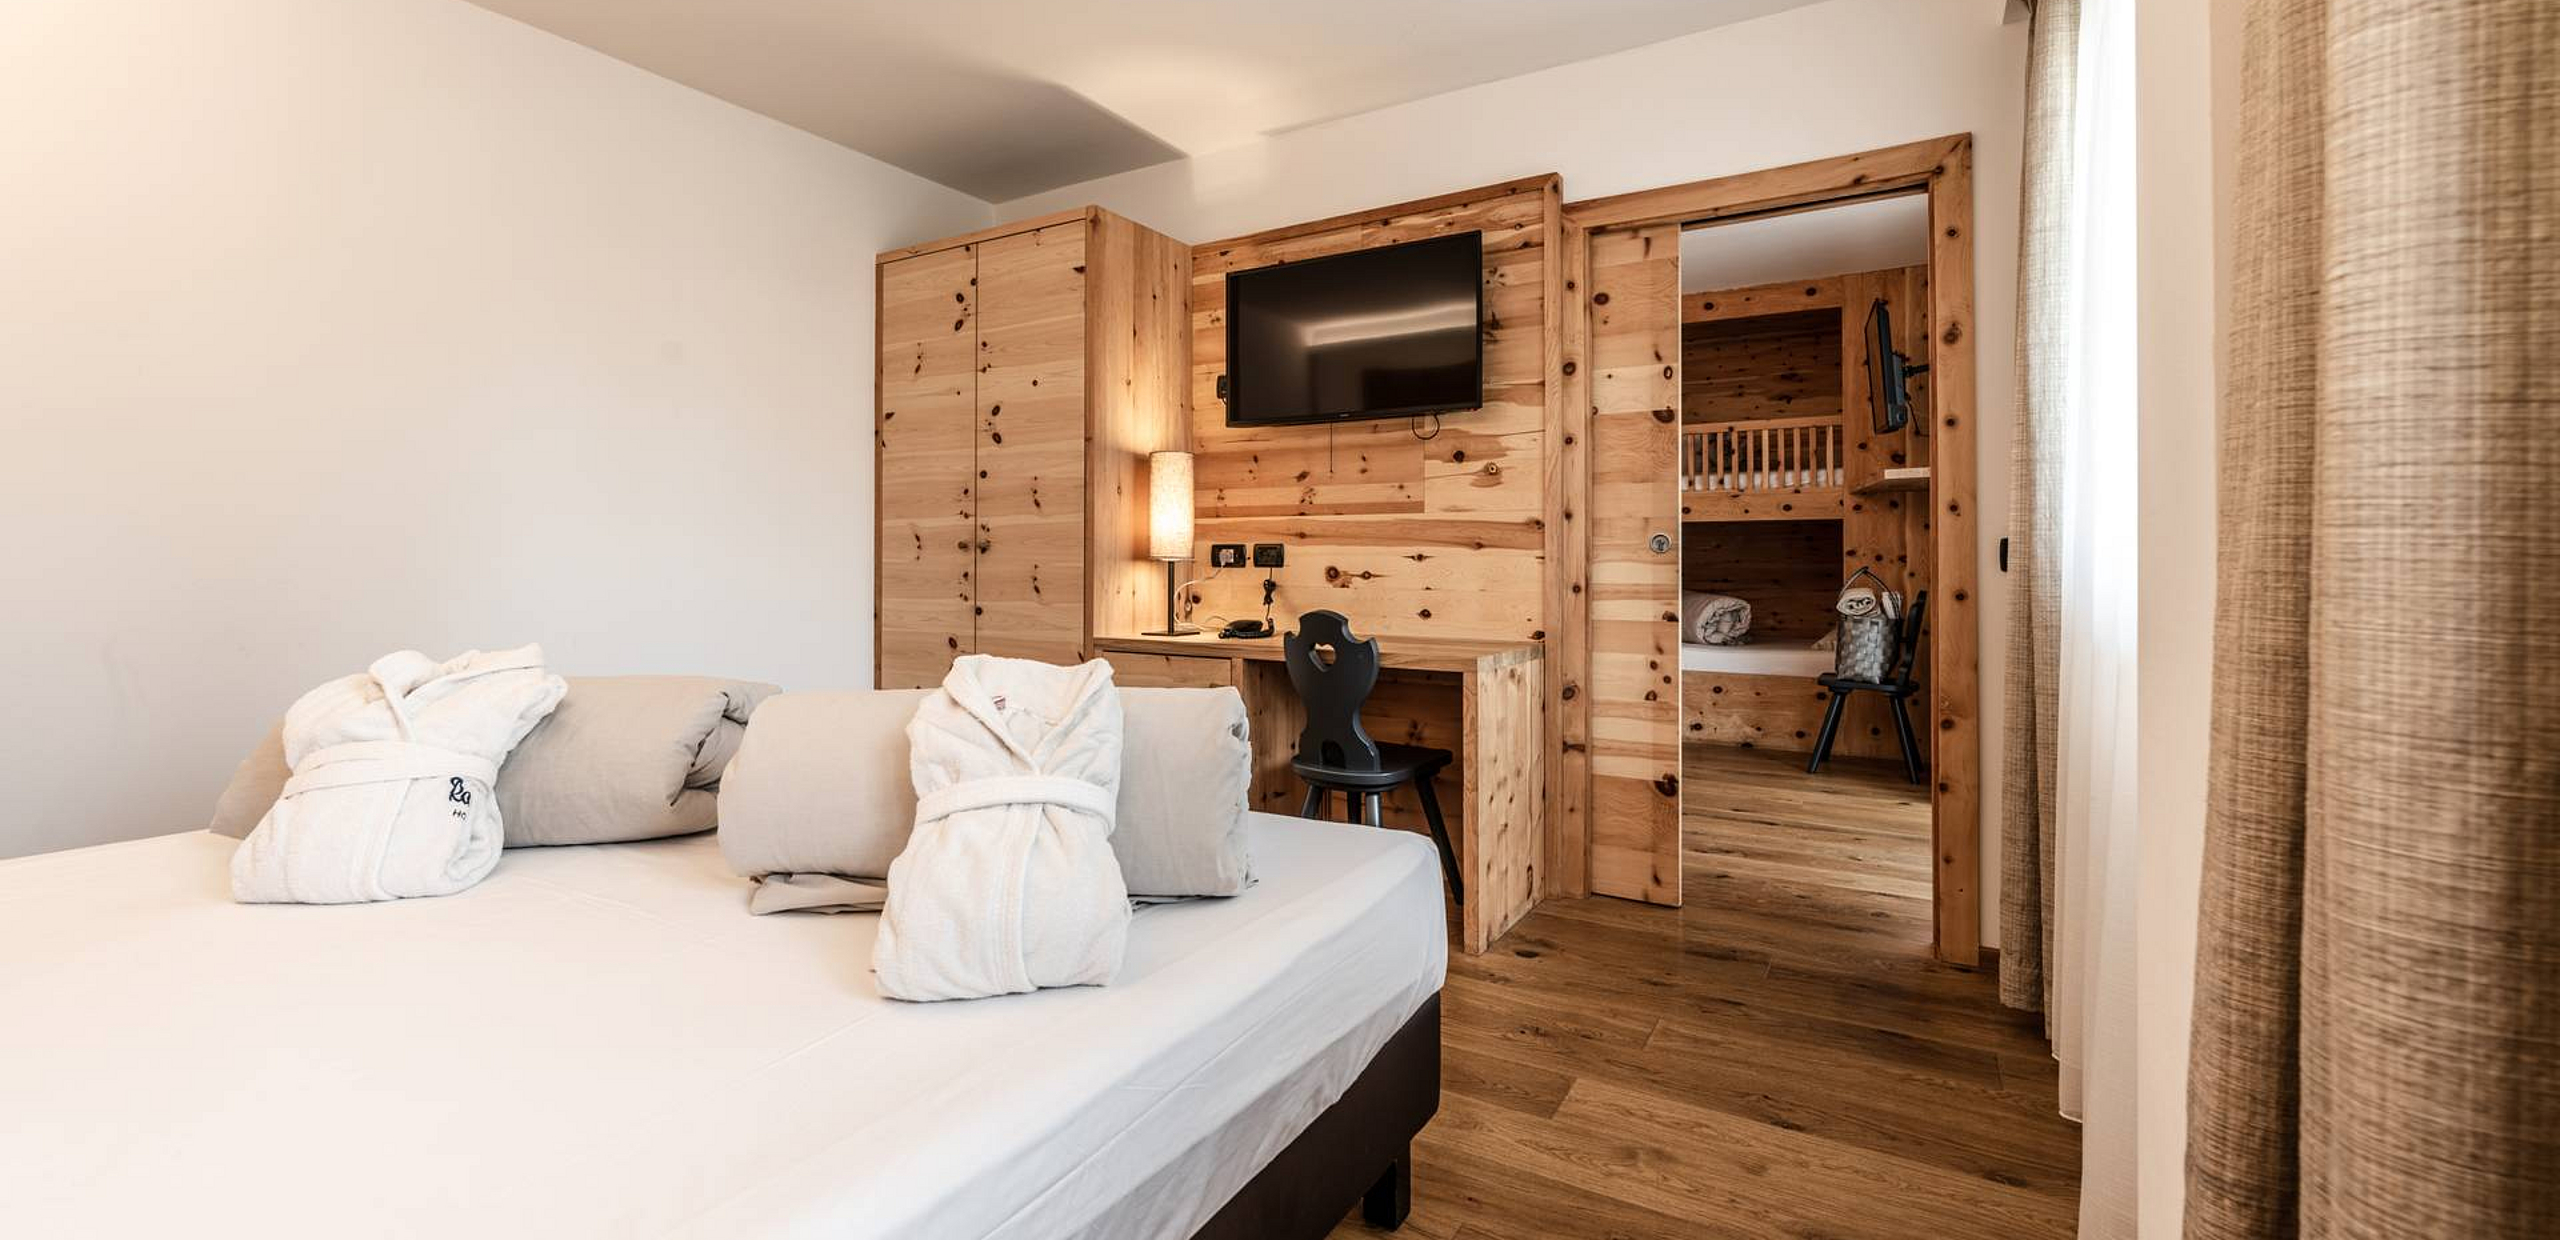 Suite Hotel, Val di sole - Marilleva - Trentino